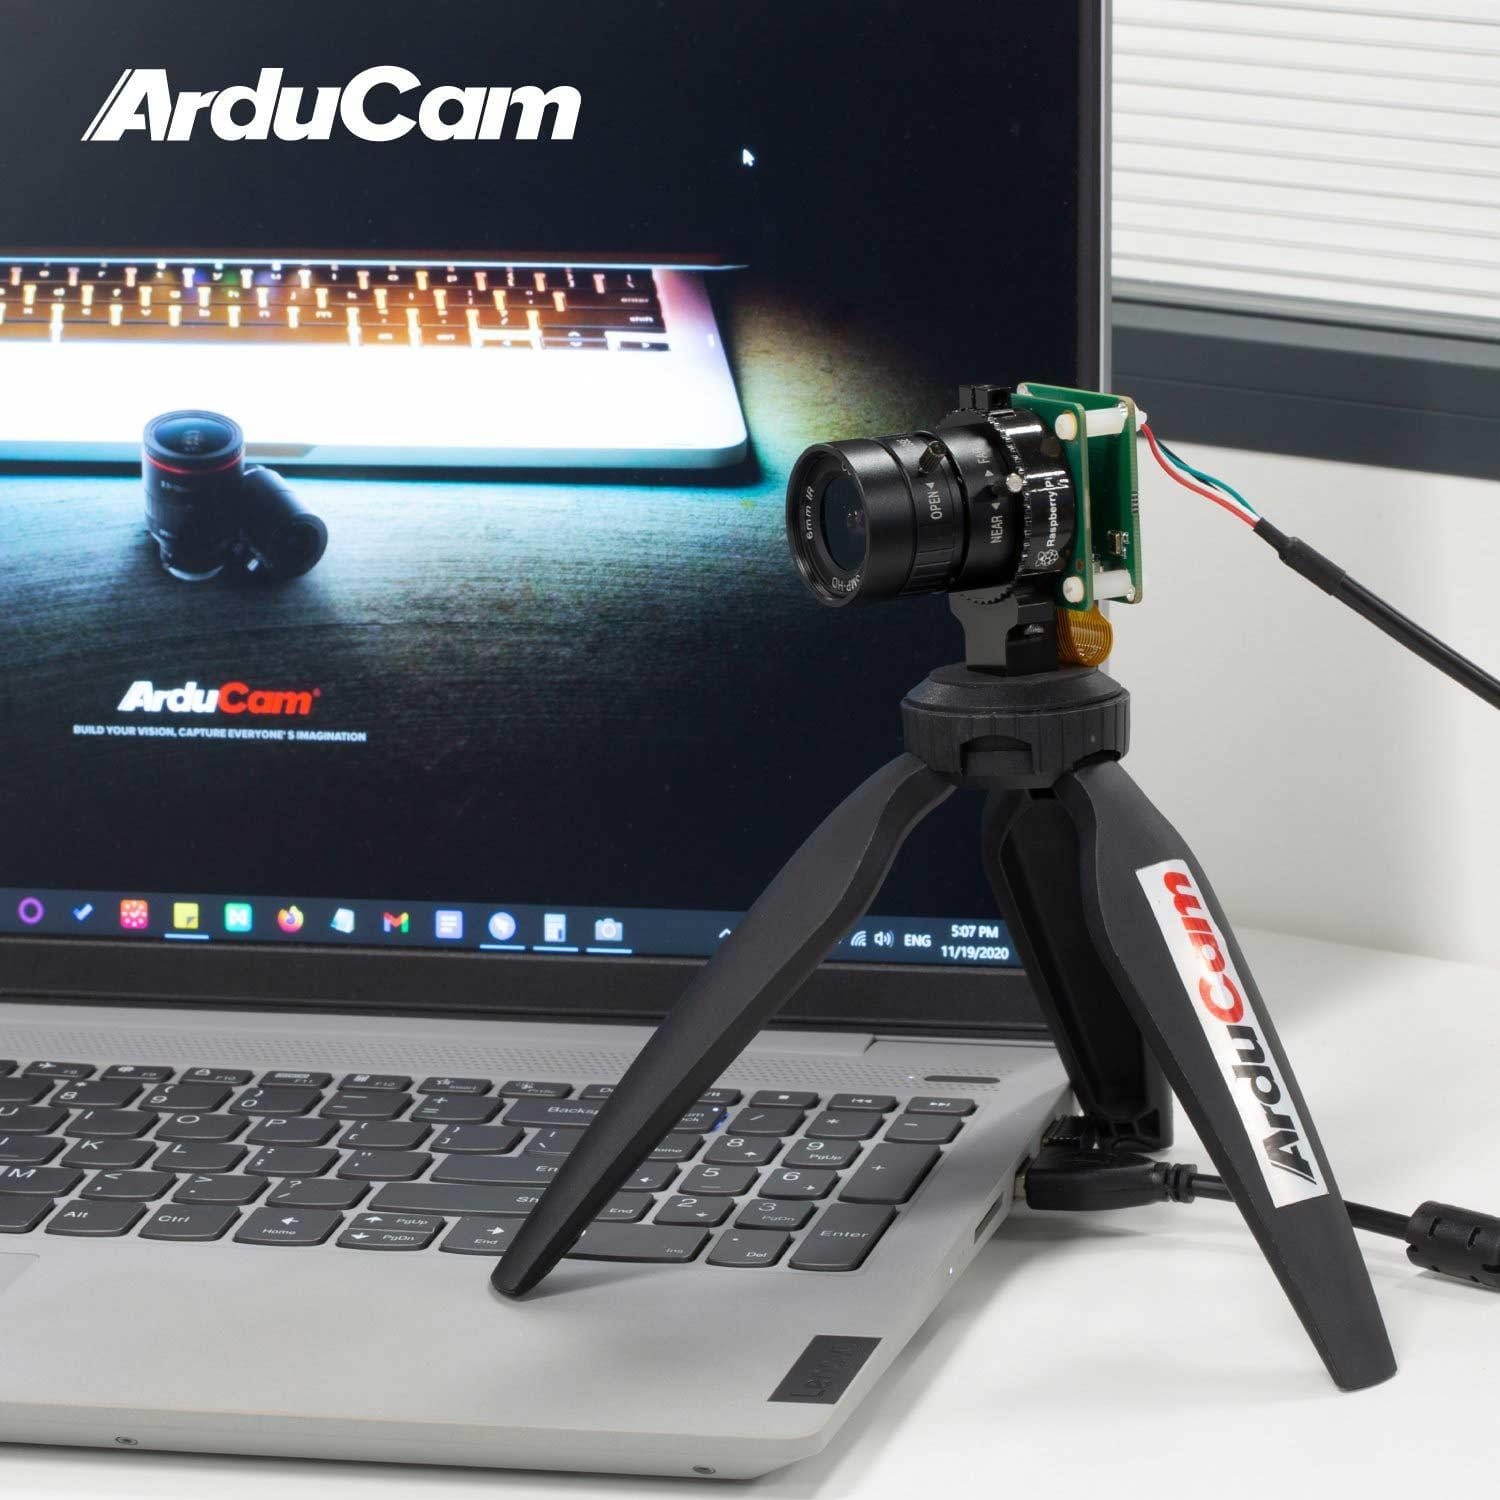 HQ Camera USB Webcam Adapter - The Pi Hut